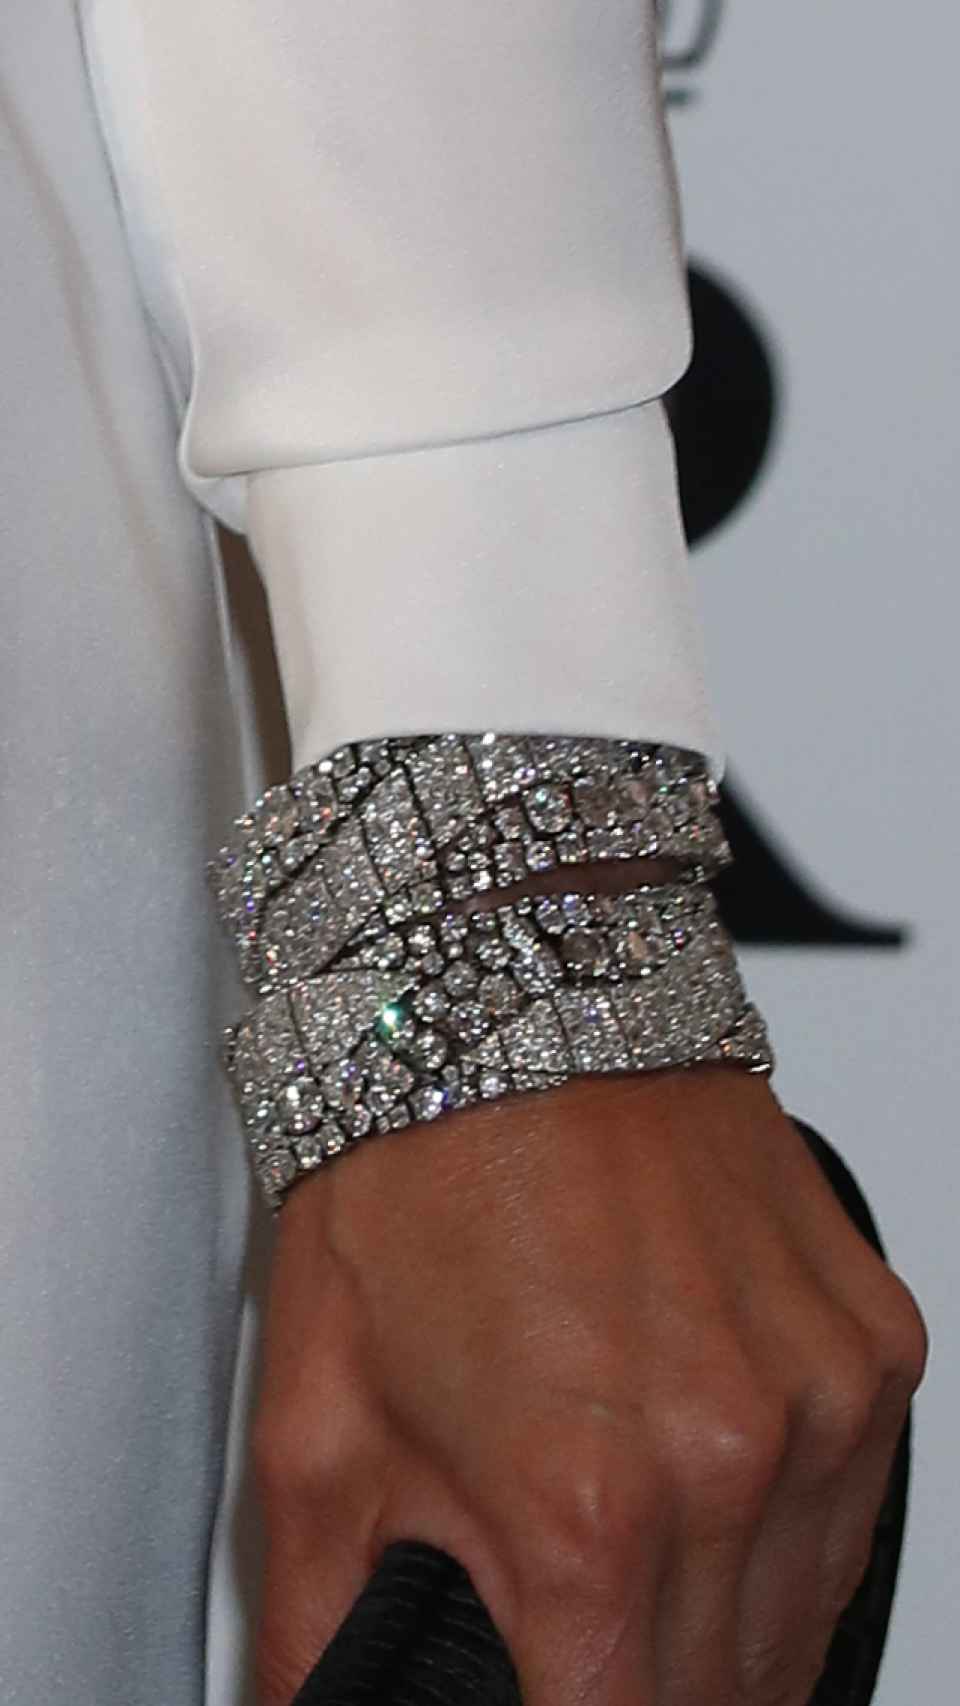 La reina Letizia con las pulseras gemelas de Cartier del joyero de pasar.